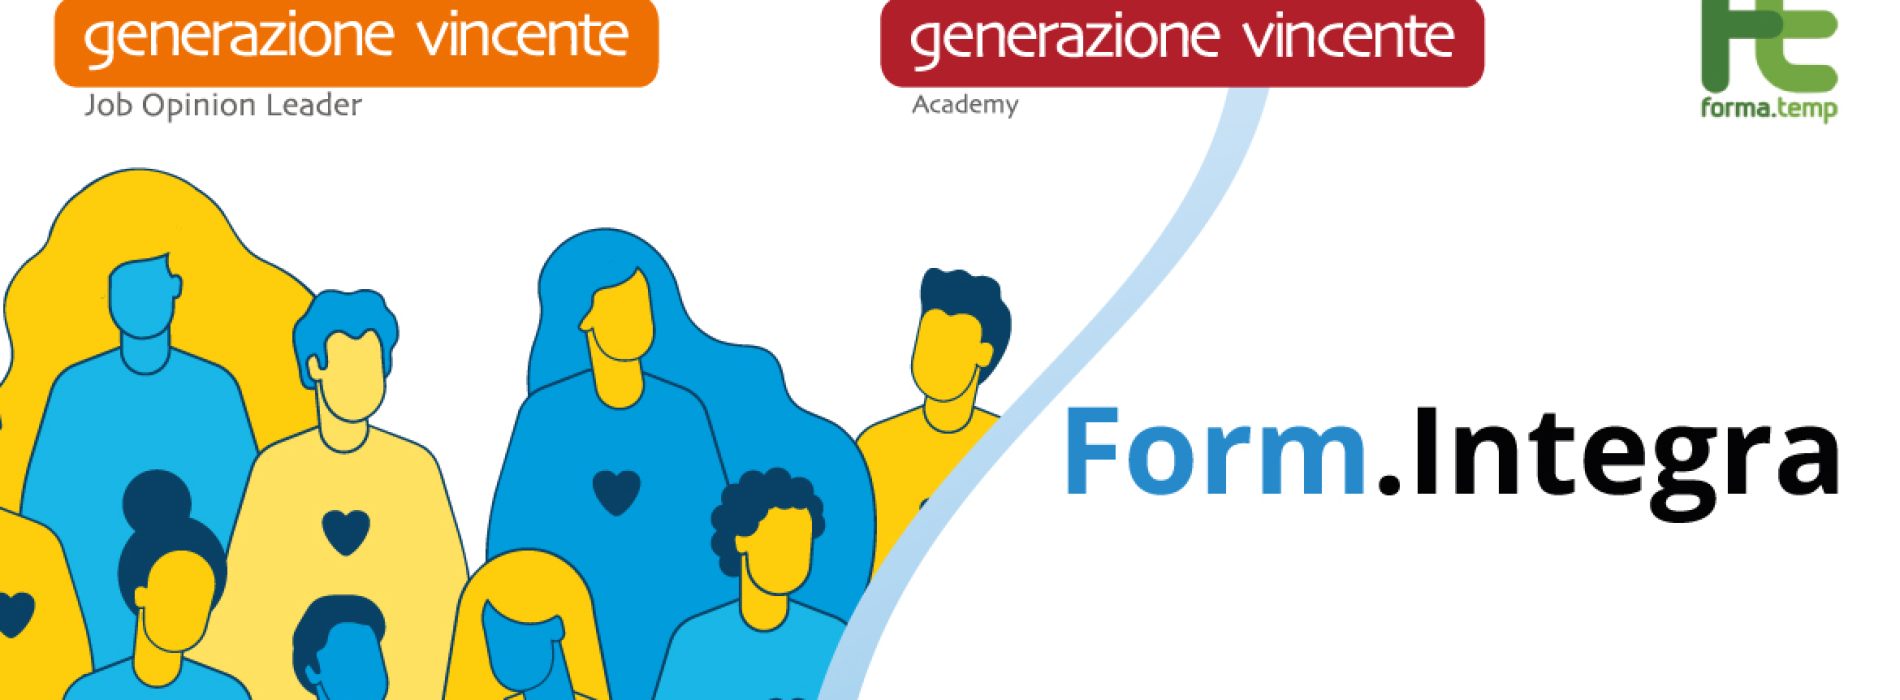 Form.Integra: Generazione Vincente aderisce al progetto per i rifugiati ucraini